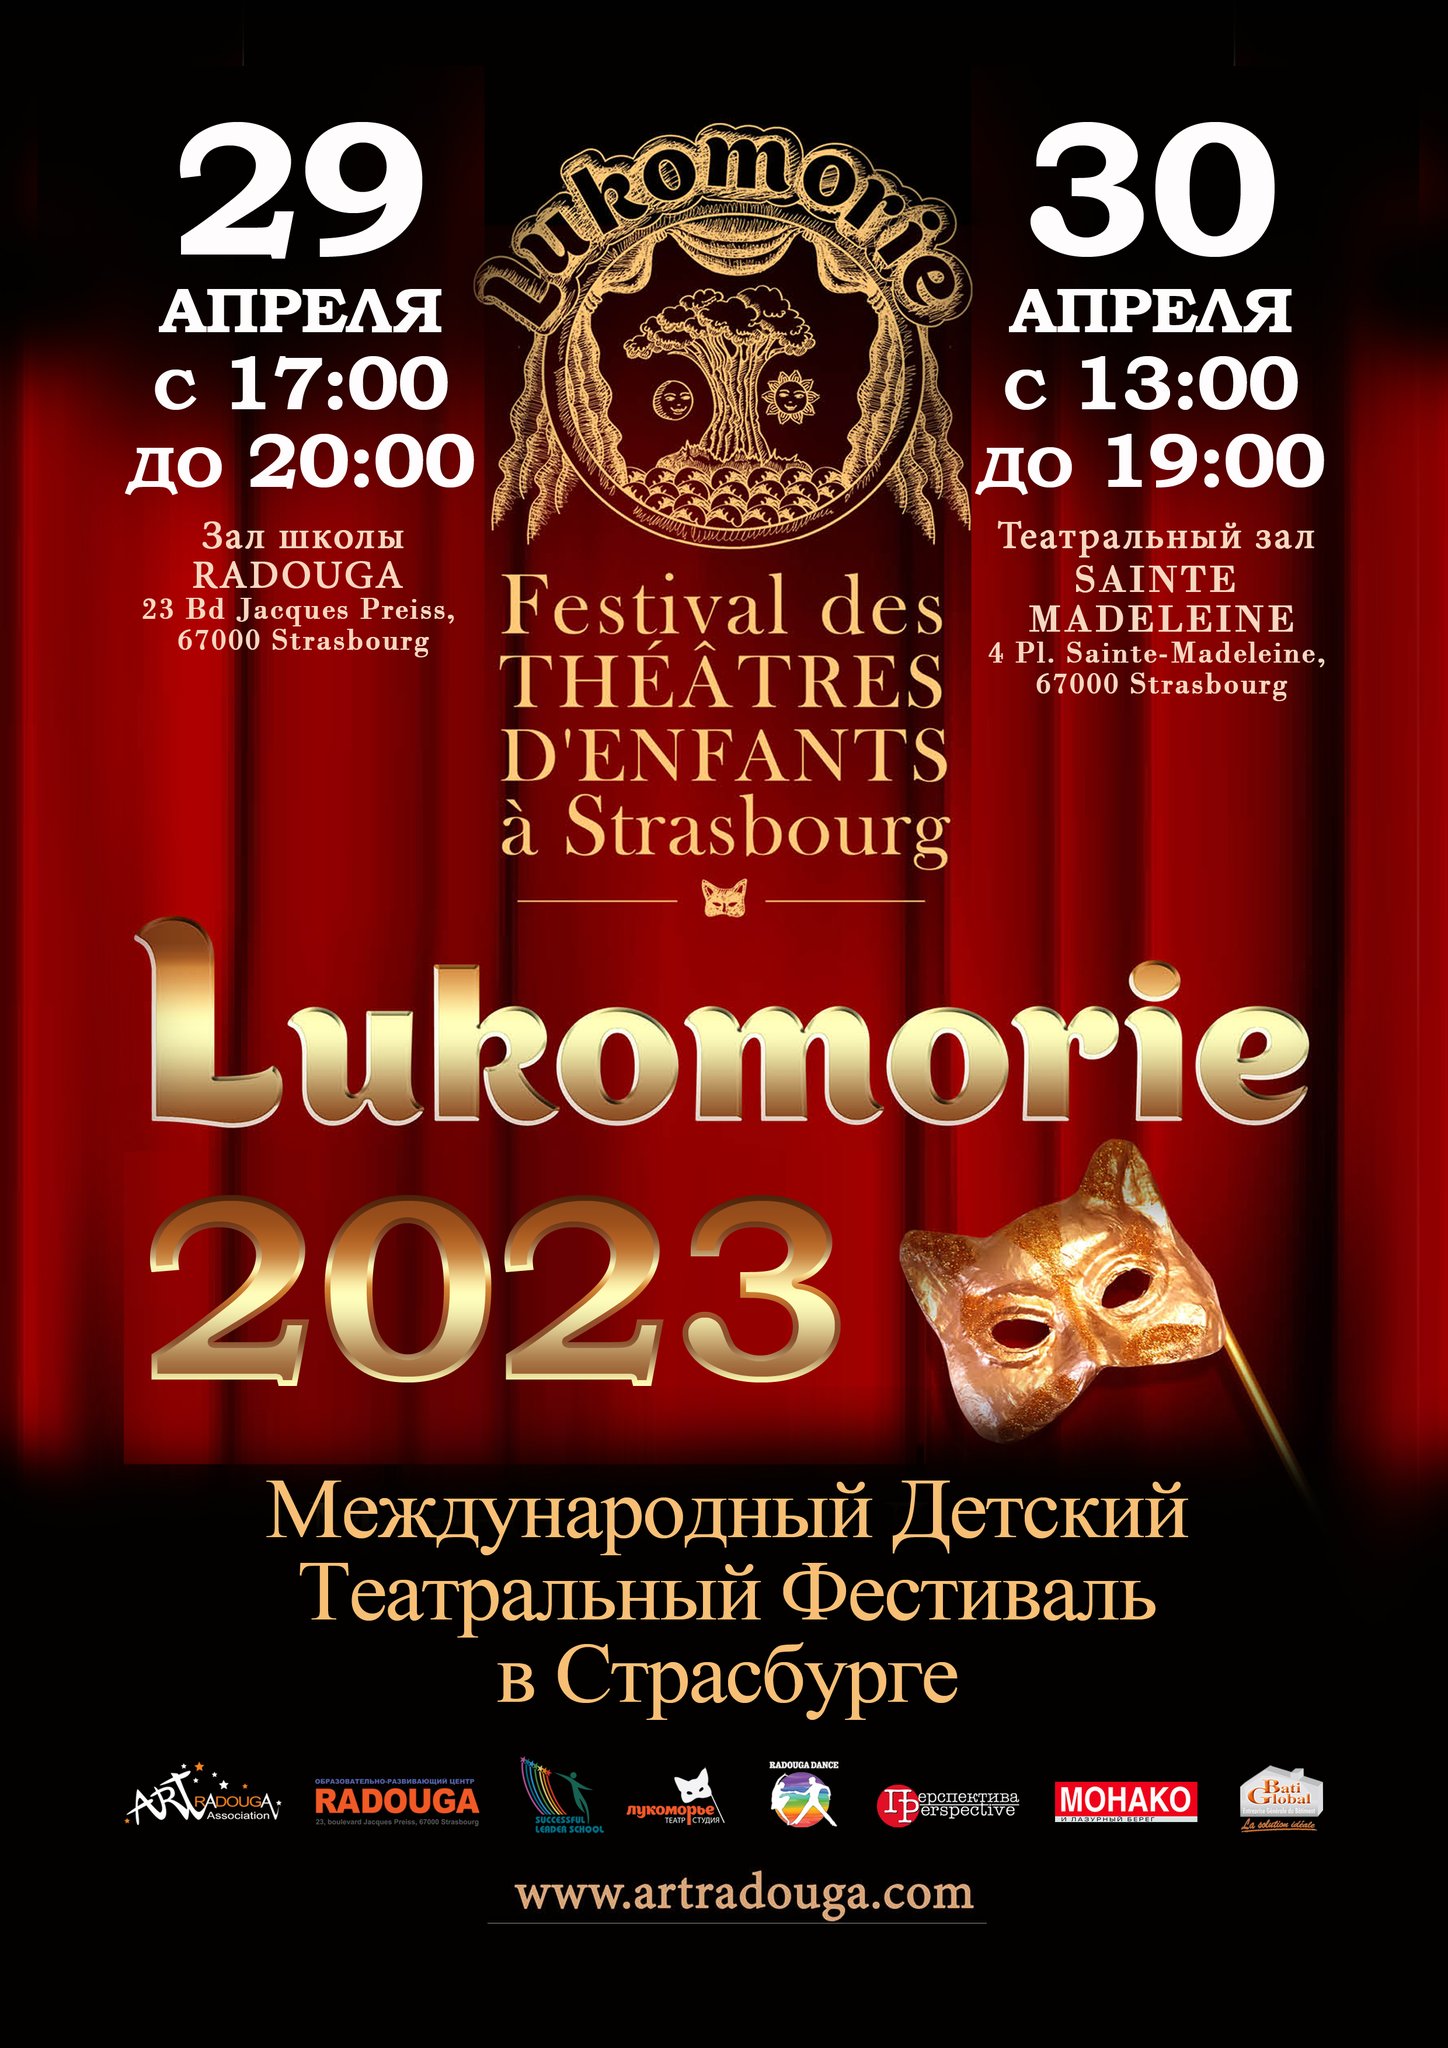 До 31 марта 2023 г. — прием заявок на участие во II Международном детском театральном фестивале «Лукоморье» в Страсбурге